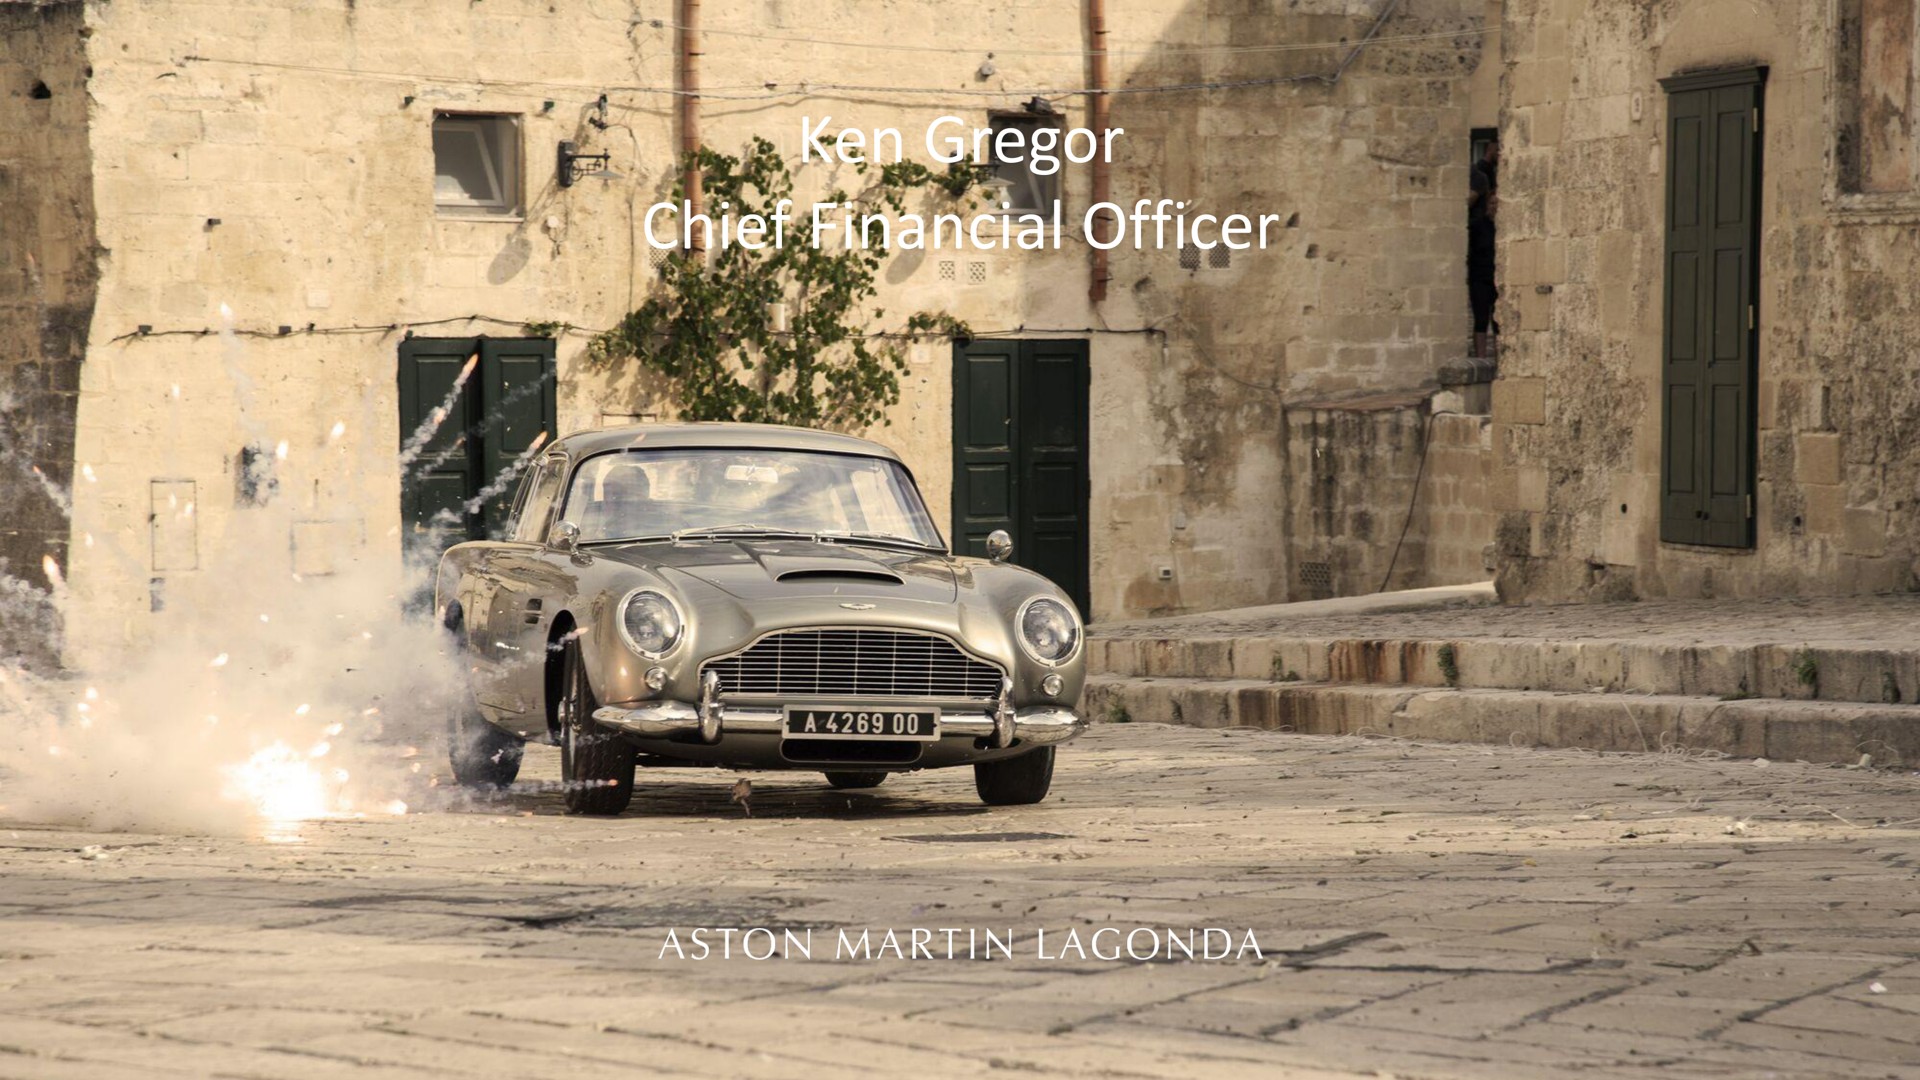 ken chief financial officer | Aston Martin Lagonda